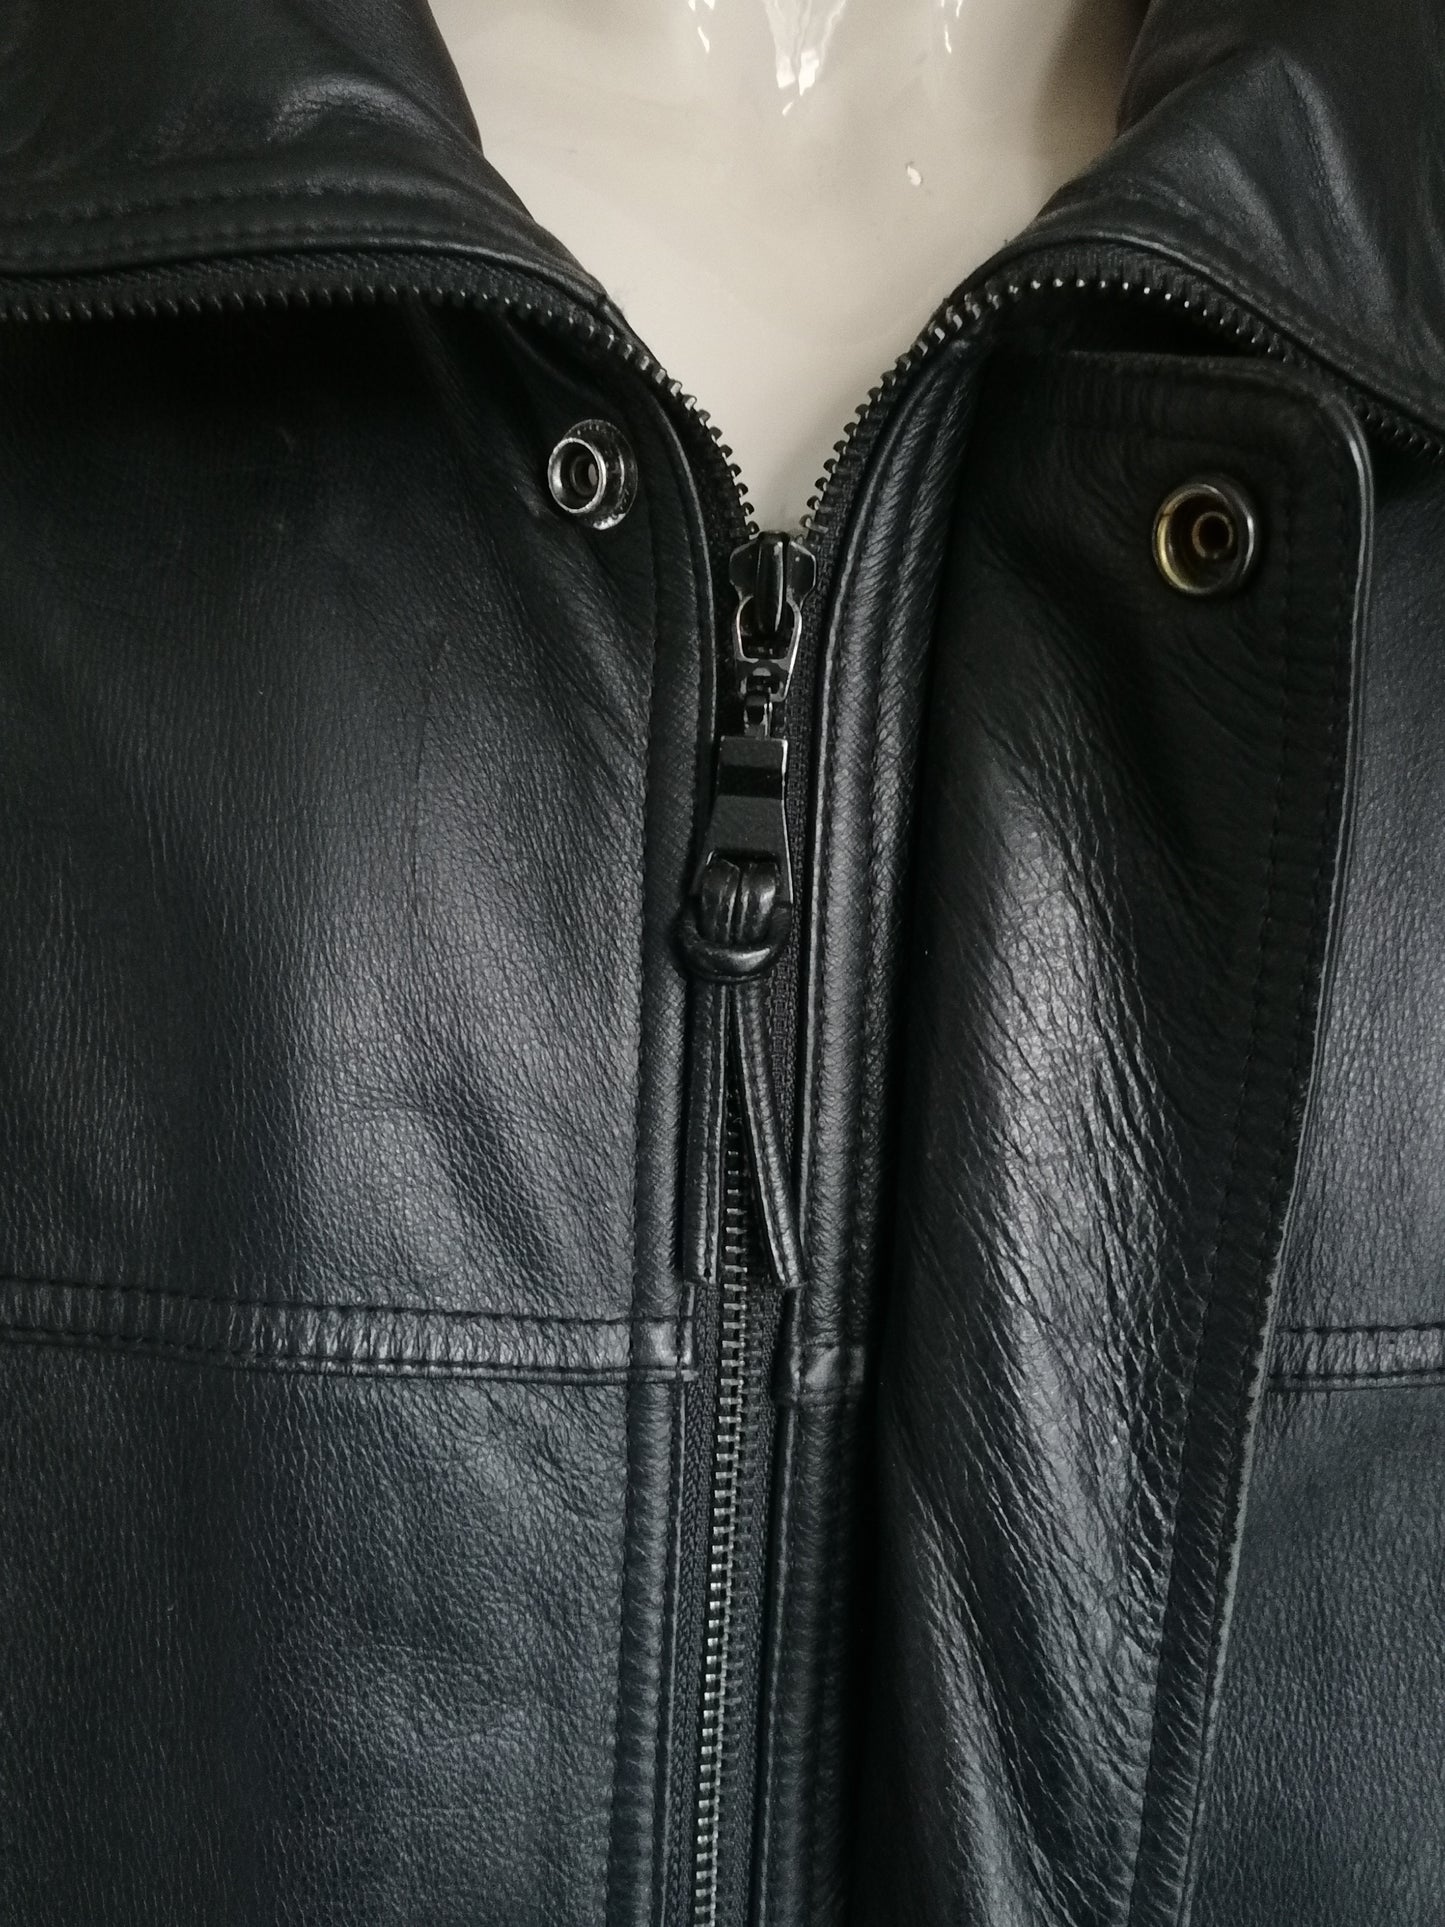 Vintage Lederjacke. Mit doppelter Schließung und Taschen ausgekleidet. Schwarz gefärbt. Größe 56 / xl.